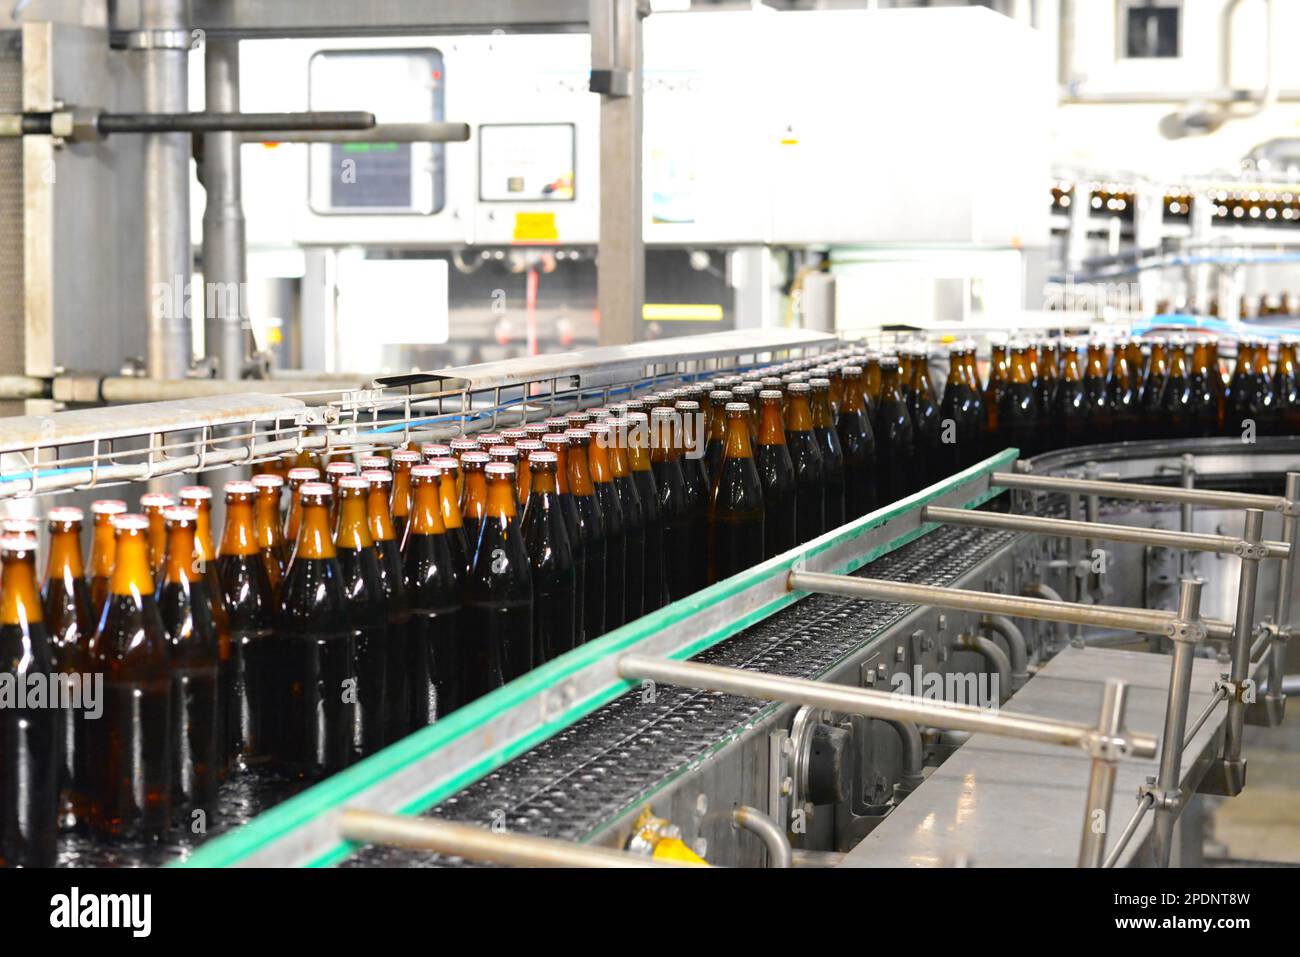 Bottiglie di birra sulla linea di montaggio in una birreria moderna - impianto industriale nell'industria alimentare Foto Stock